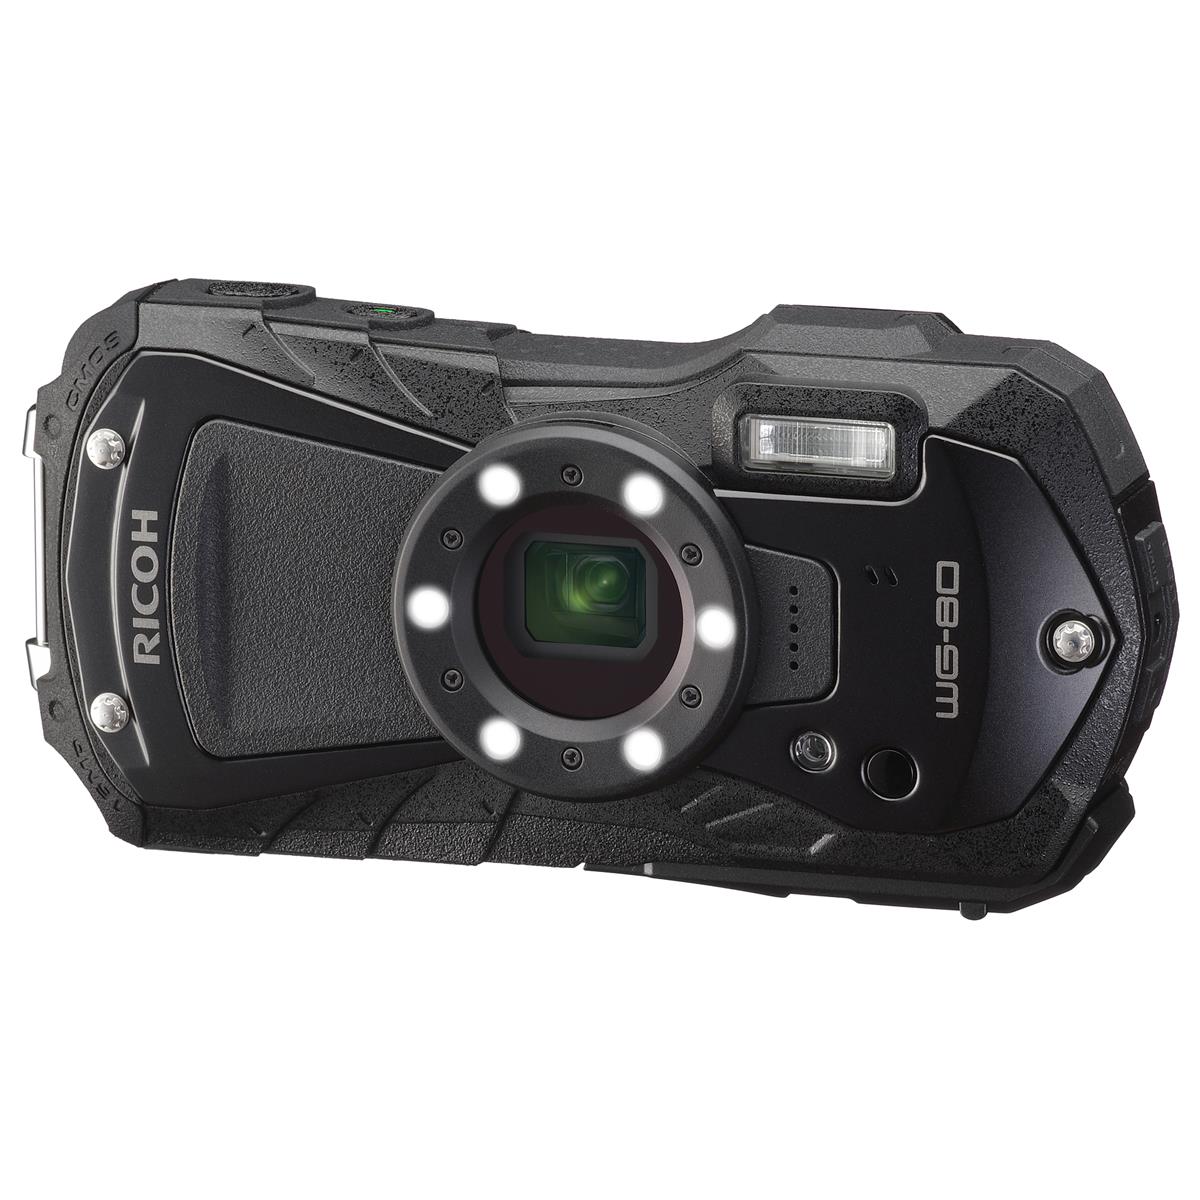 Ricoh WG-80 Waterproof Digital Camera, Black